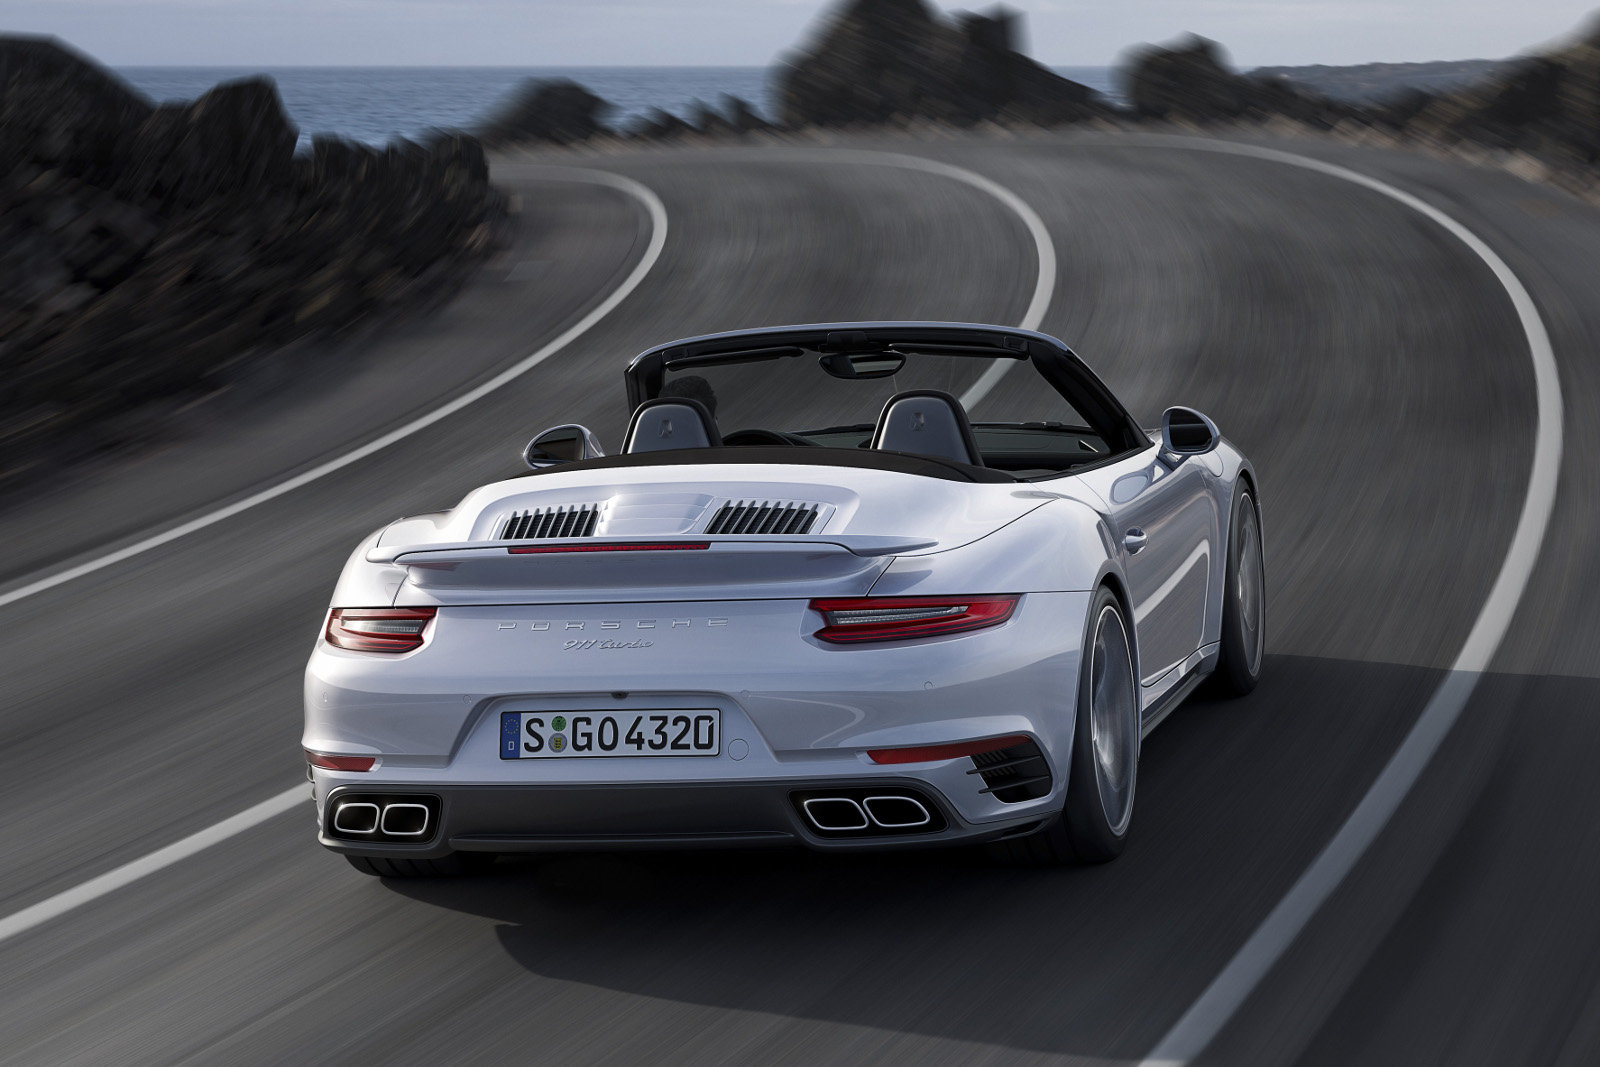 Vedle kupé bude dostupný i kabriolet, Porsche 911 Turbo.